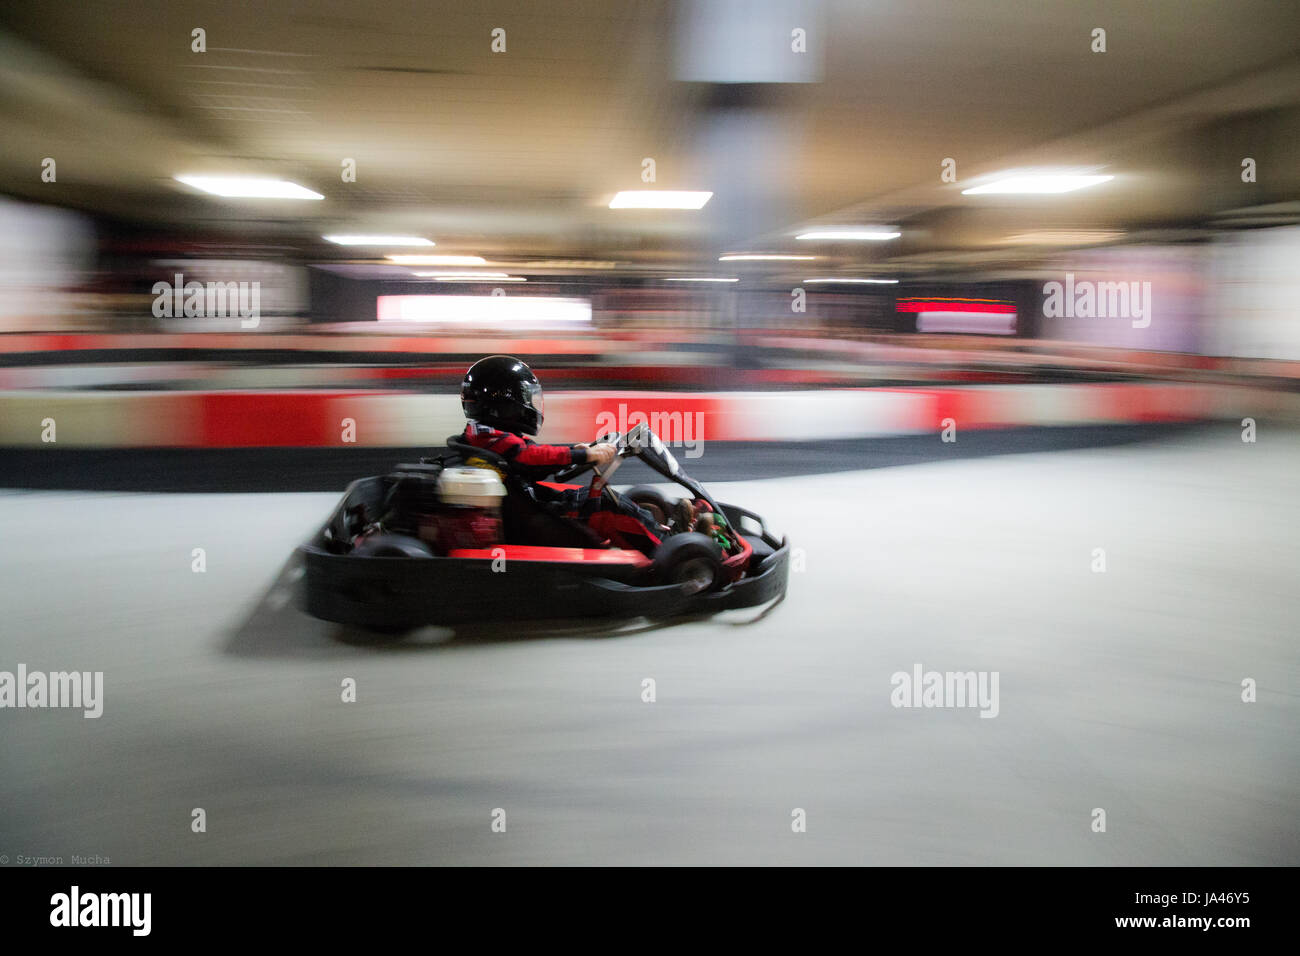 La velocità del carrello blur, un ragazzo avendo divertimento - guida veloce, corse, accelerando. Foto Stock